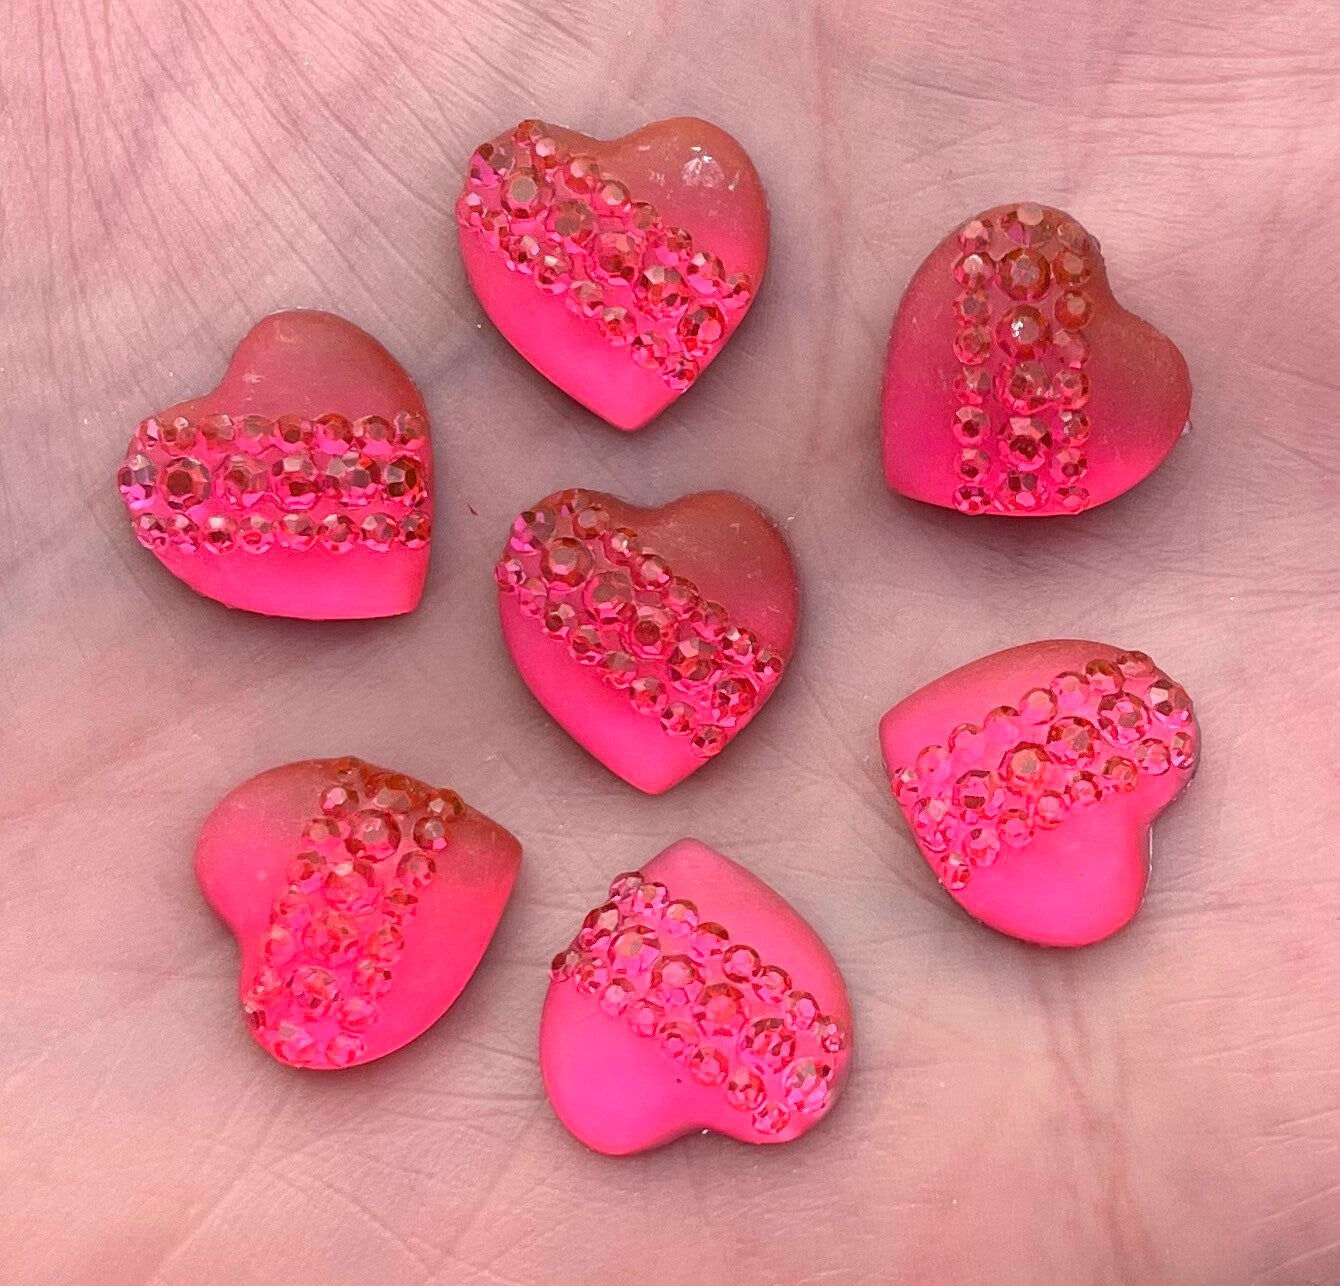 Pink rhinestone pattern heart cabochons, 12mm